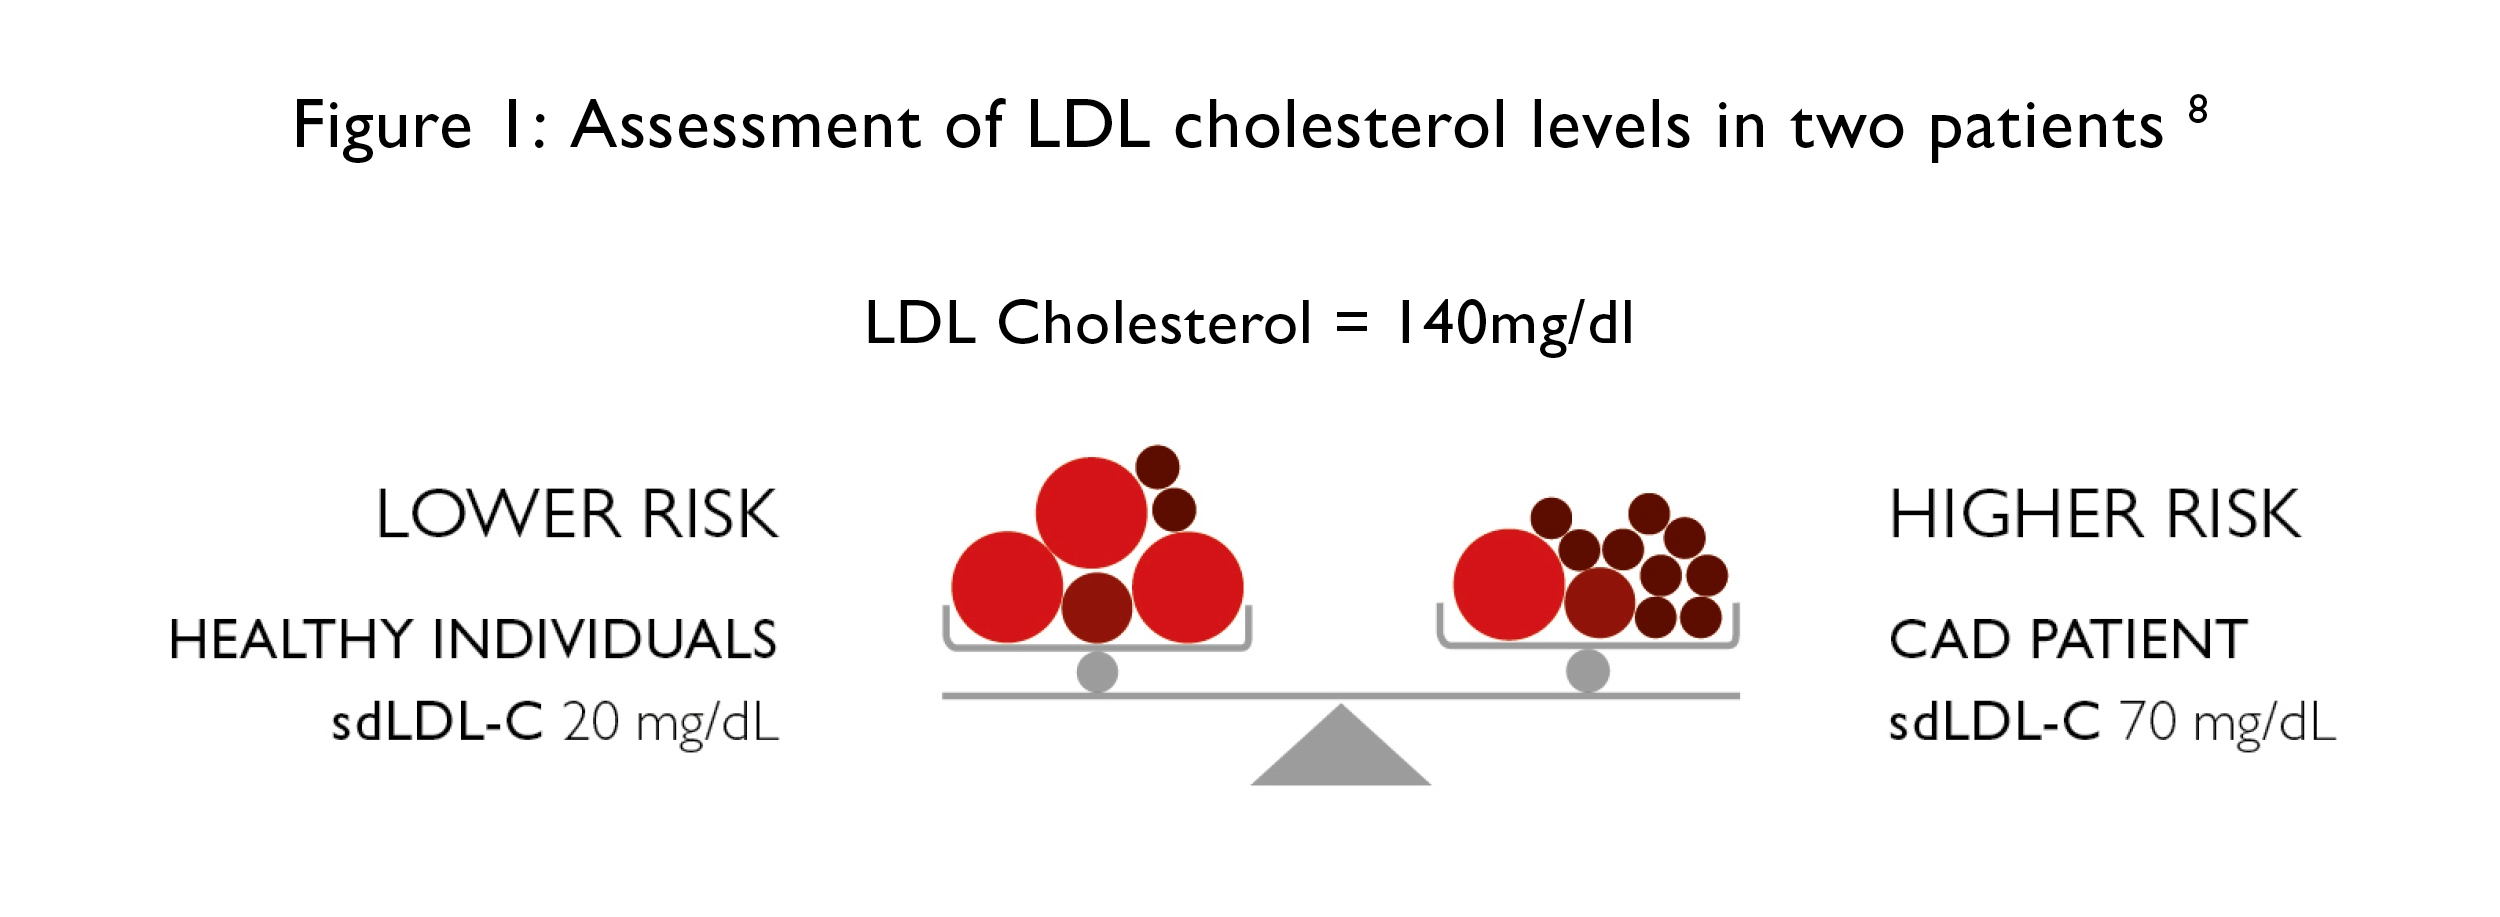 Imagen 1: Evaluación de los niveles de colesterol LDL en dos pacientes (Fotografía cortesía de Randox).